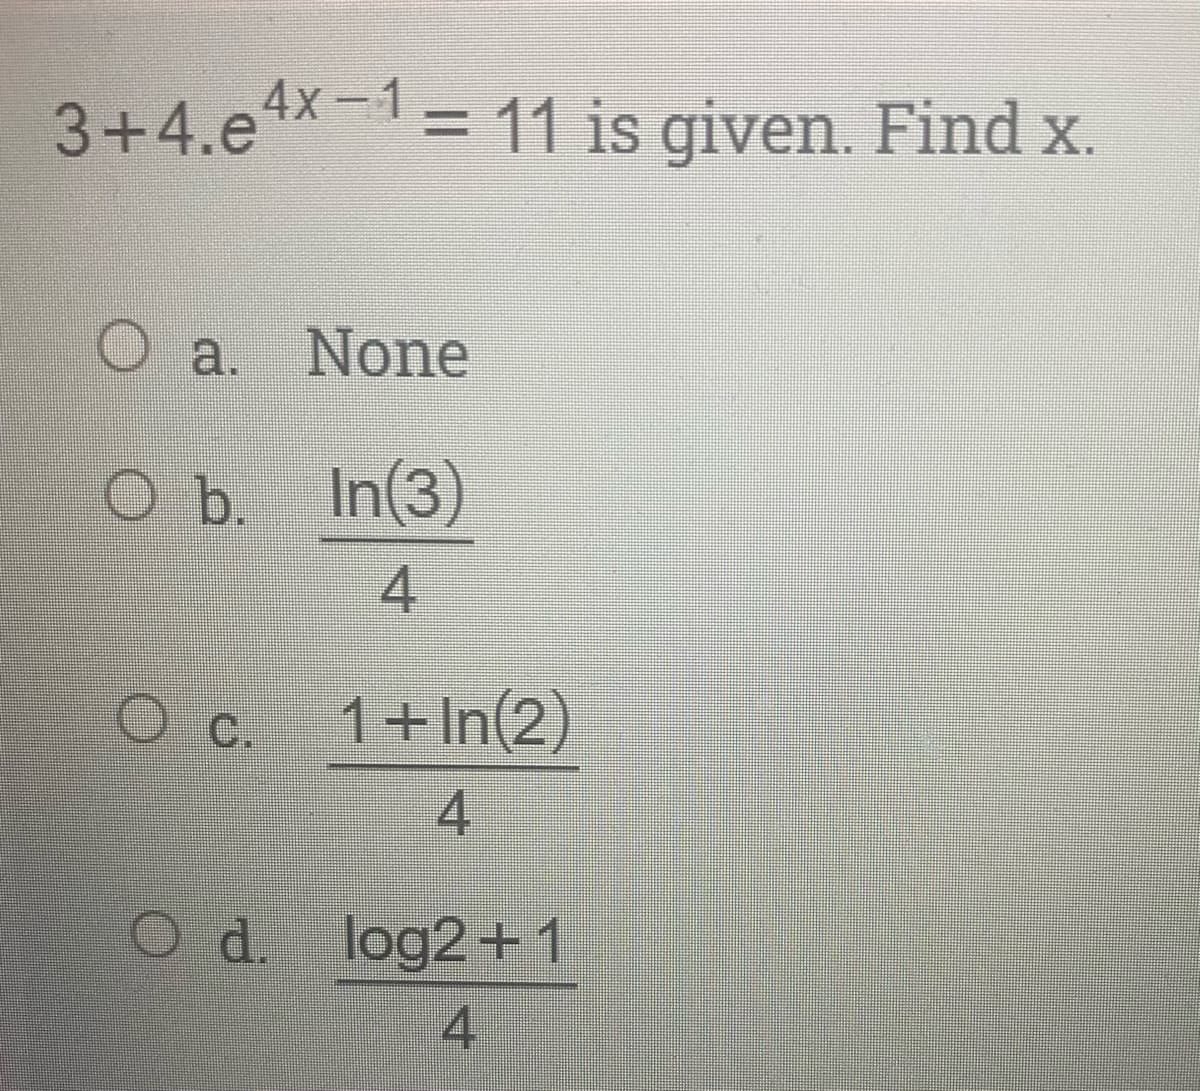 3+4.e4x-1= 11 is given. Find x.
O a. None
O b. In(3)
4.
C.
1+In(2)
4
O d. log2+1
4
